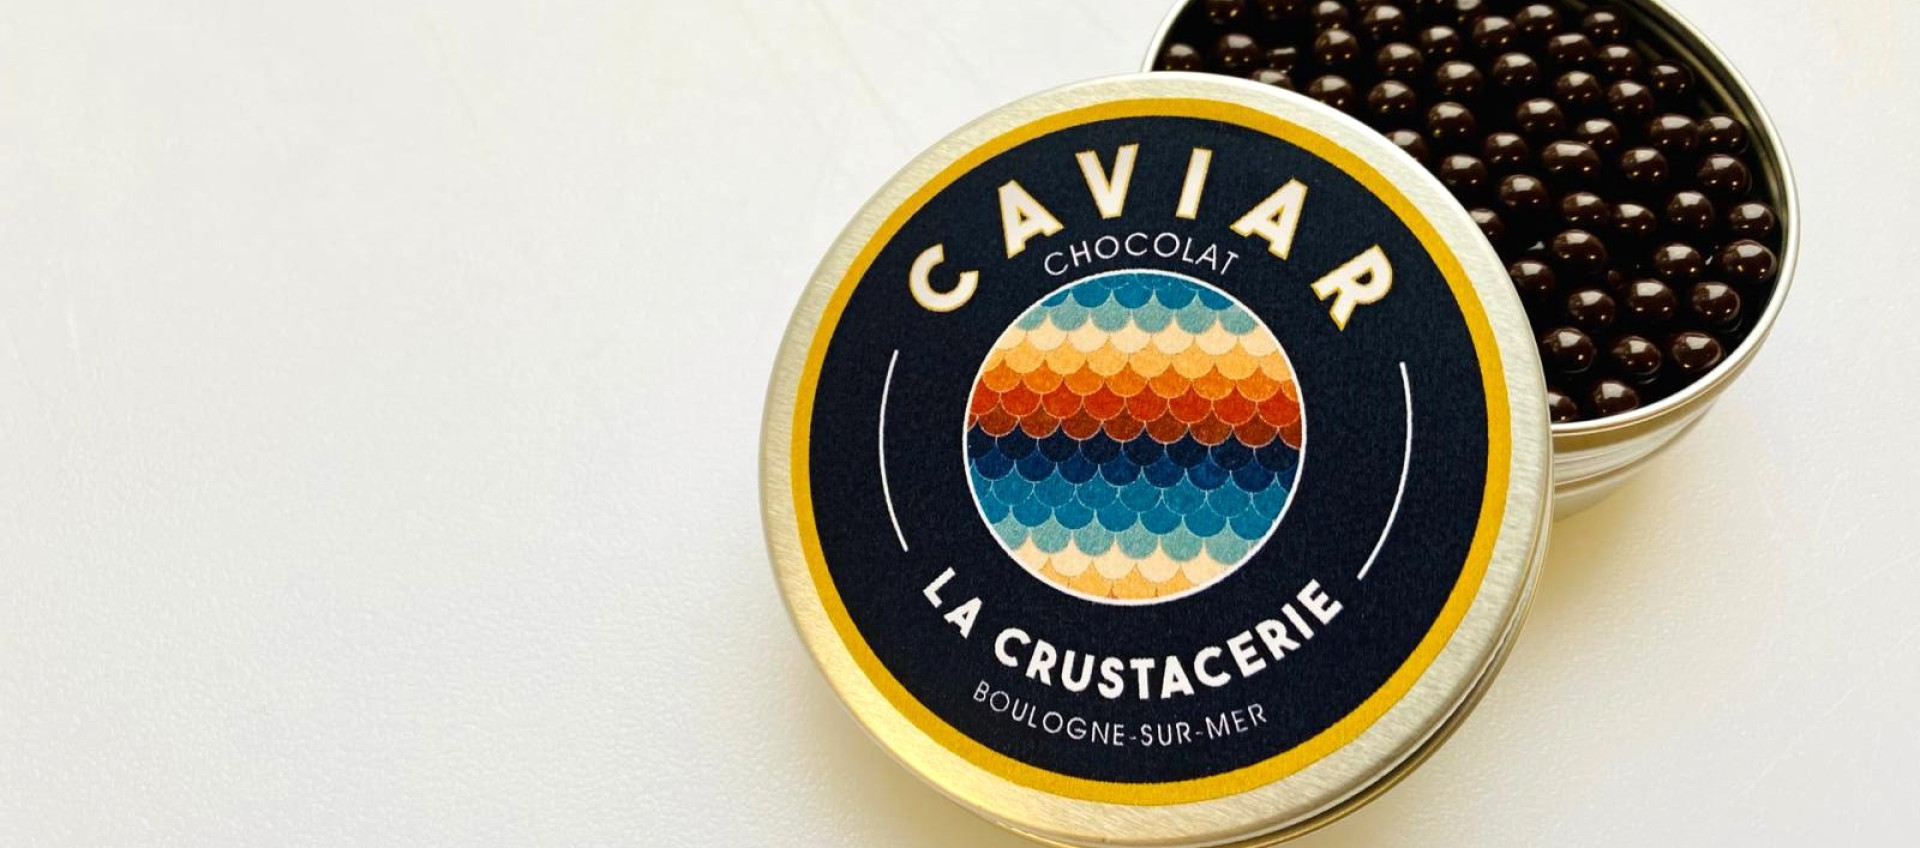 La Crustacerie vous offre du caviar en chocolat*